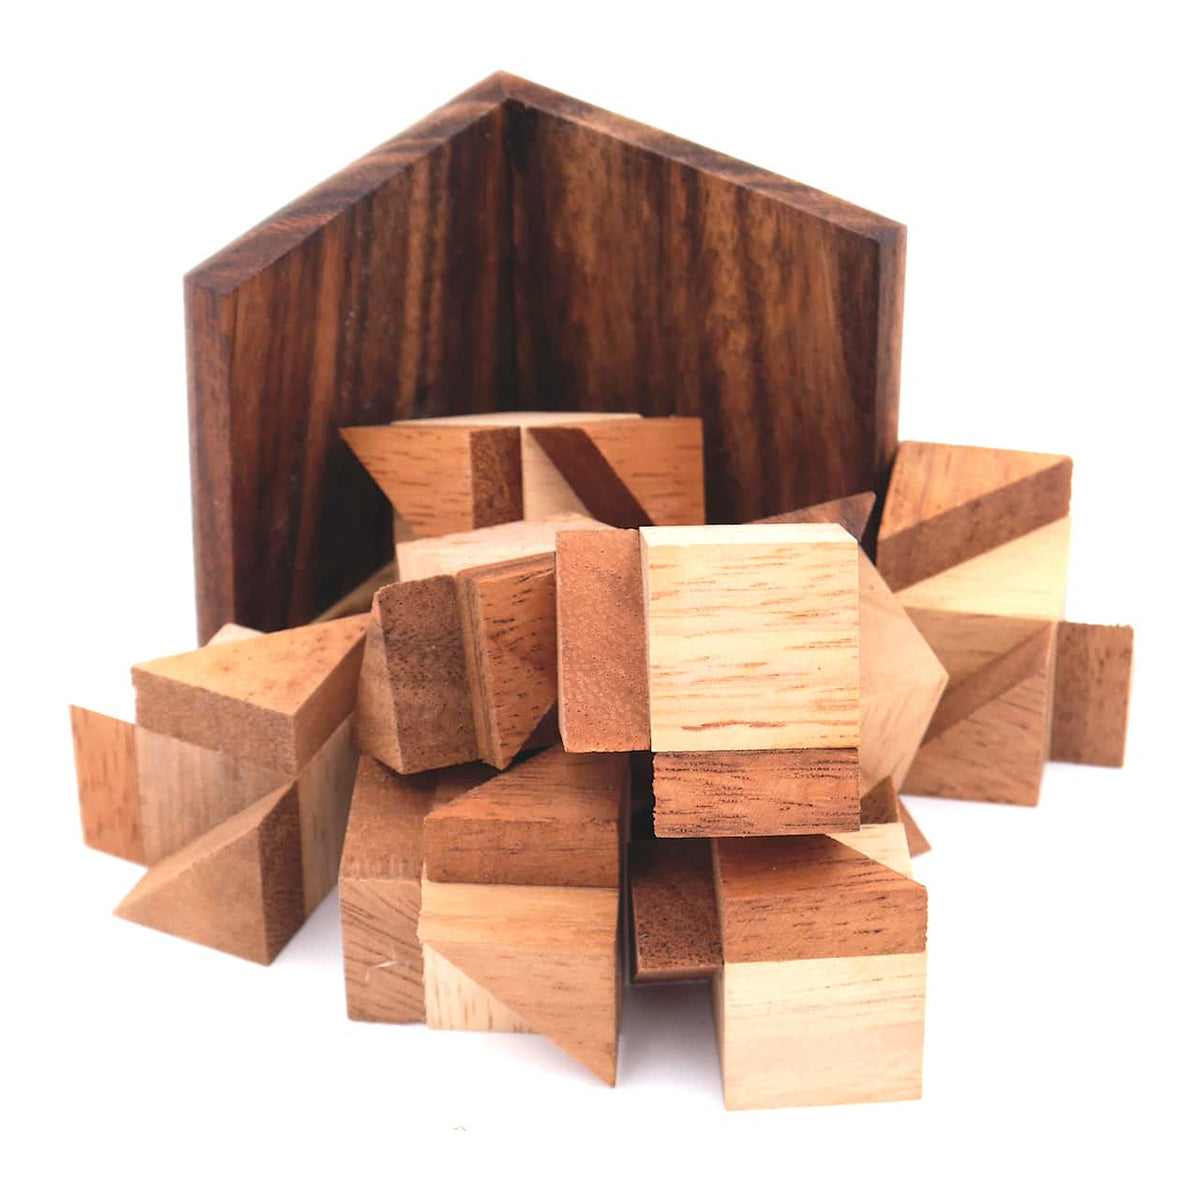 Zerlegtes Knobelspiel aus Holz bestehend aus 8 Teilen und einem Rahmen.